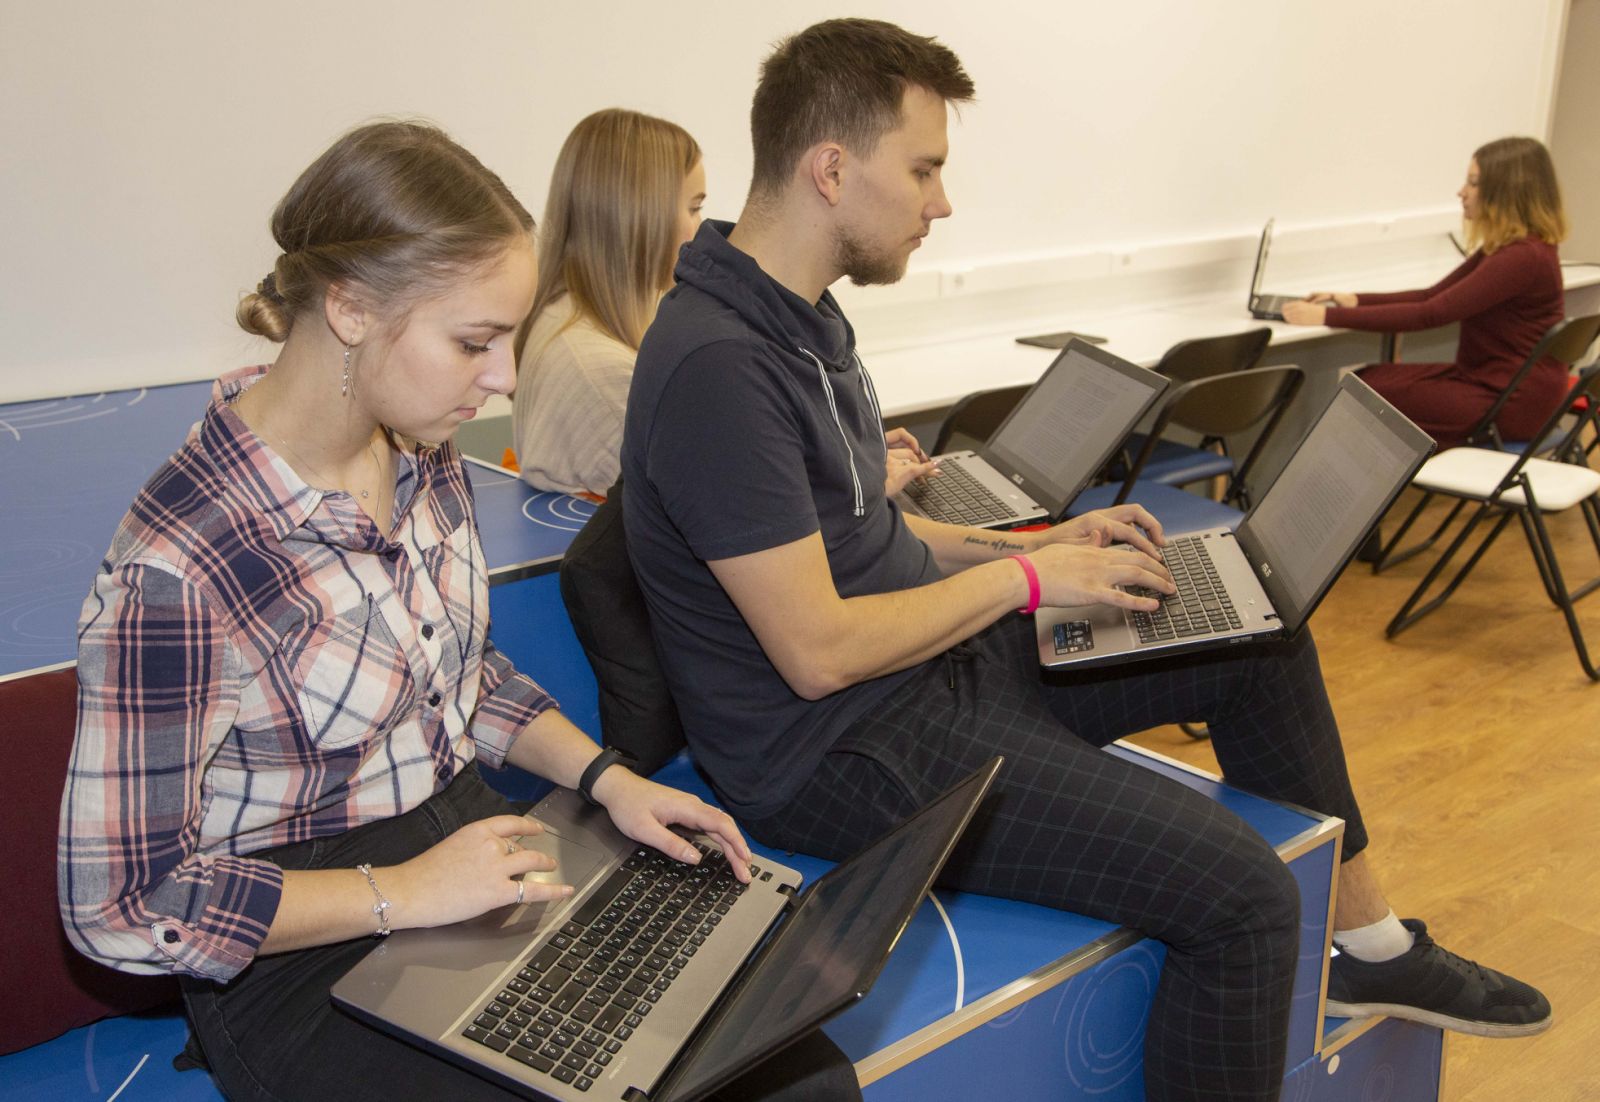 Тольяттинский государственный университет внедрил адаптивный курс «Математический анализ» на платформе Plario* для студентов, обучающихся на платформе онлайн-обучения «Росдистант» по направлению бакалавриата «Прикладная информатика».